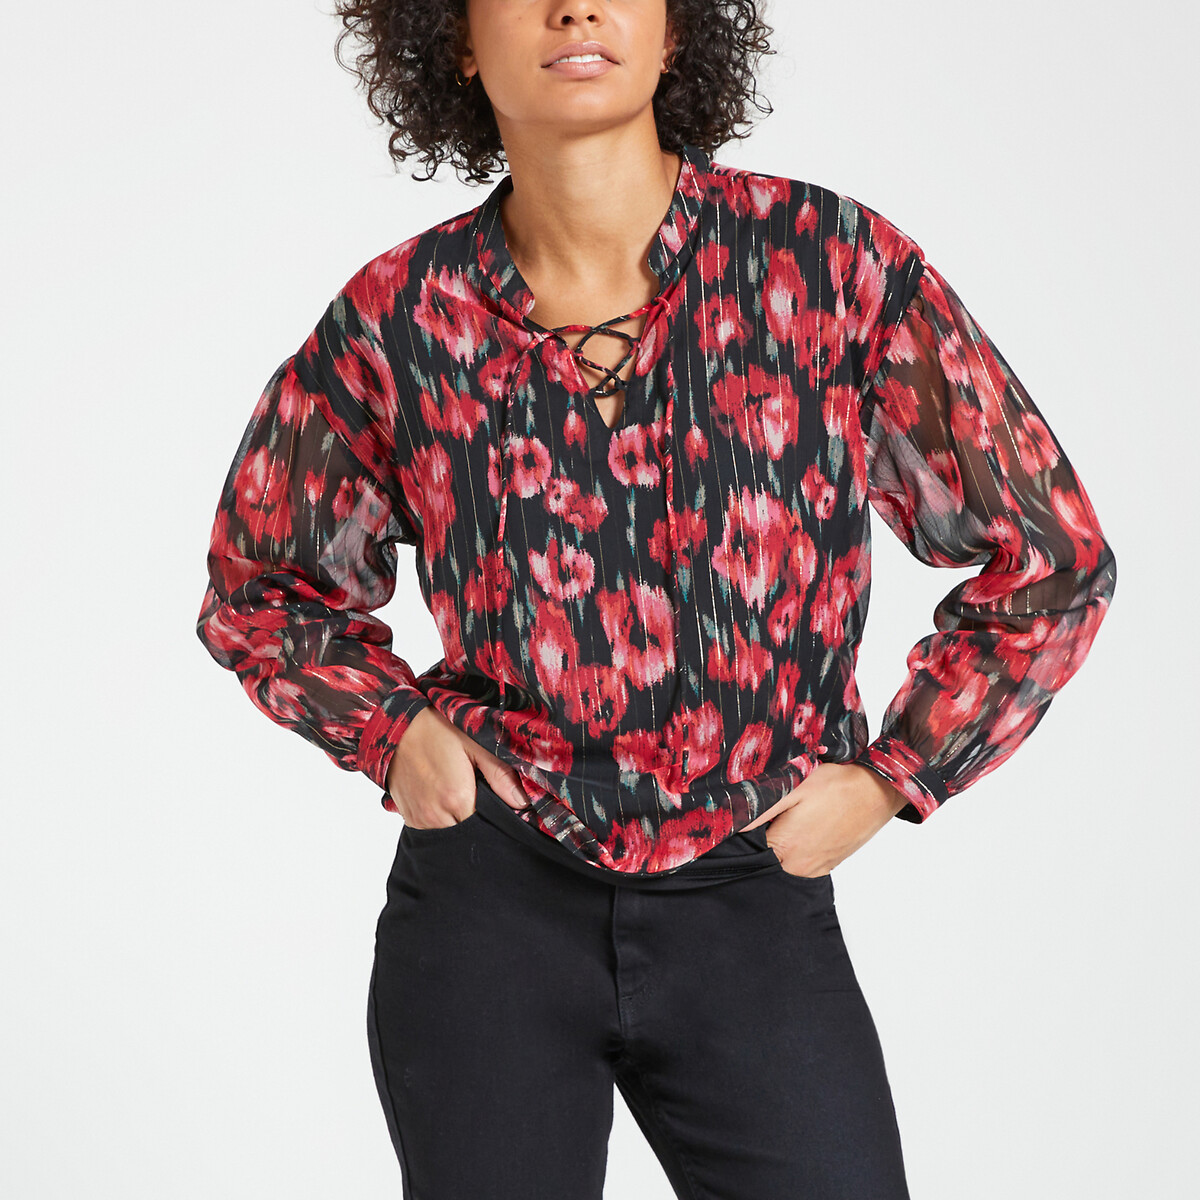 Блузка с круглым вырезом длинными рукавами цветочным принтом S красный